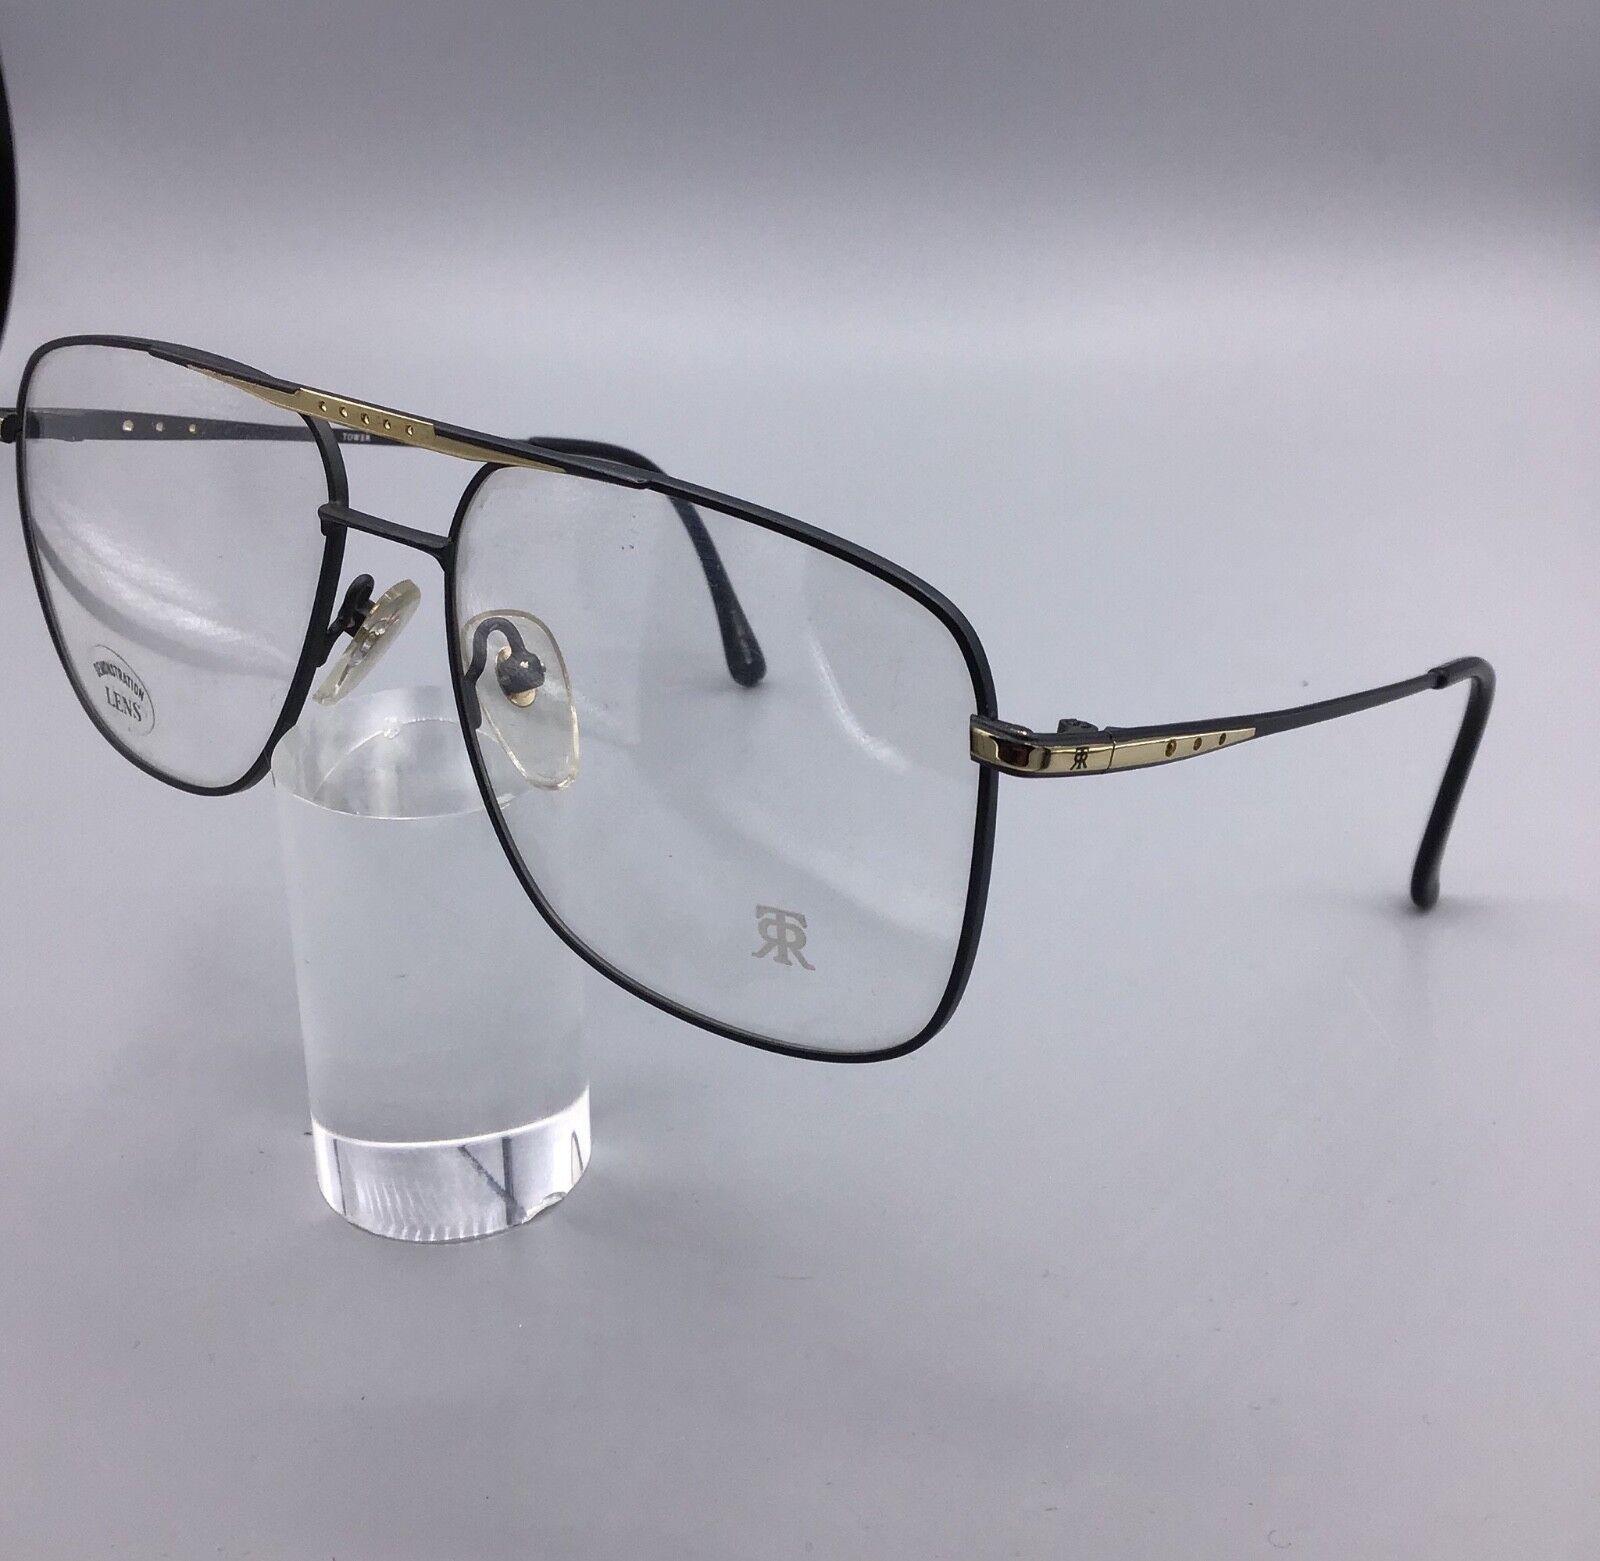 Roy Tower occhiale vintage brillen lunettes Eyewear model City color 2495